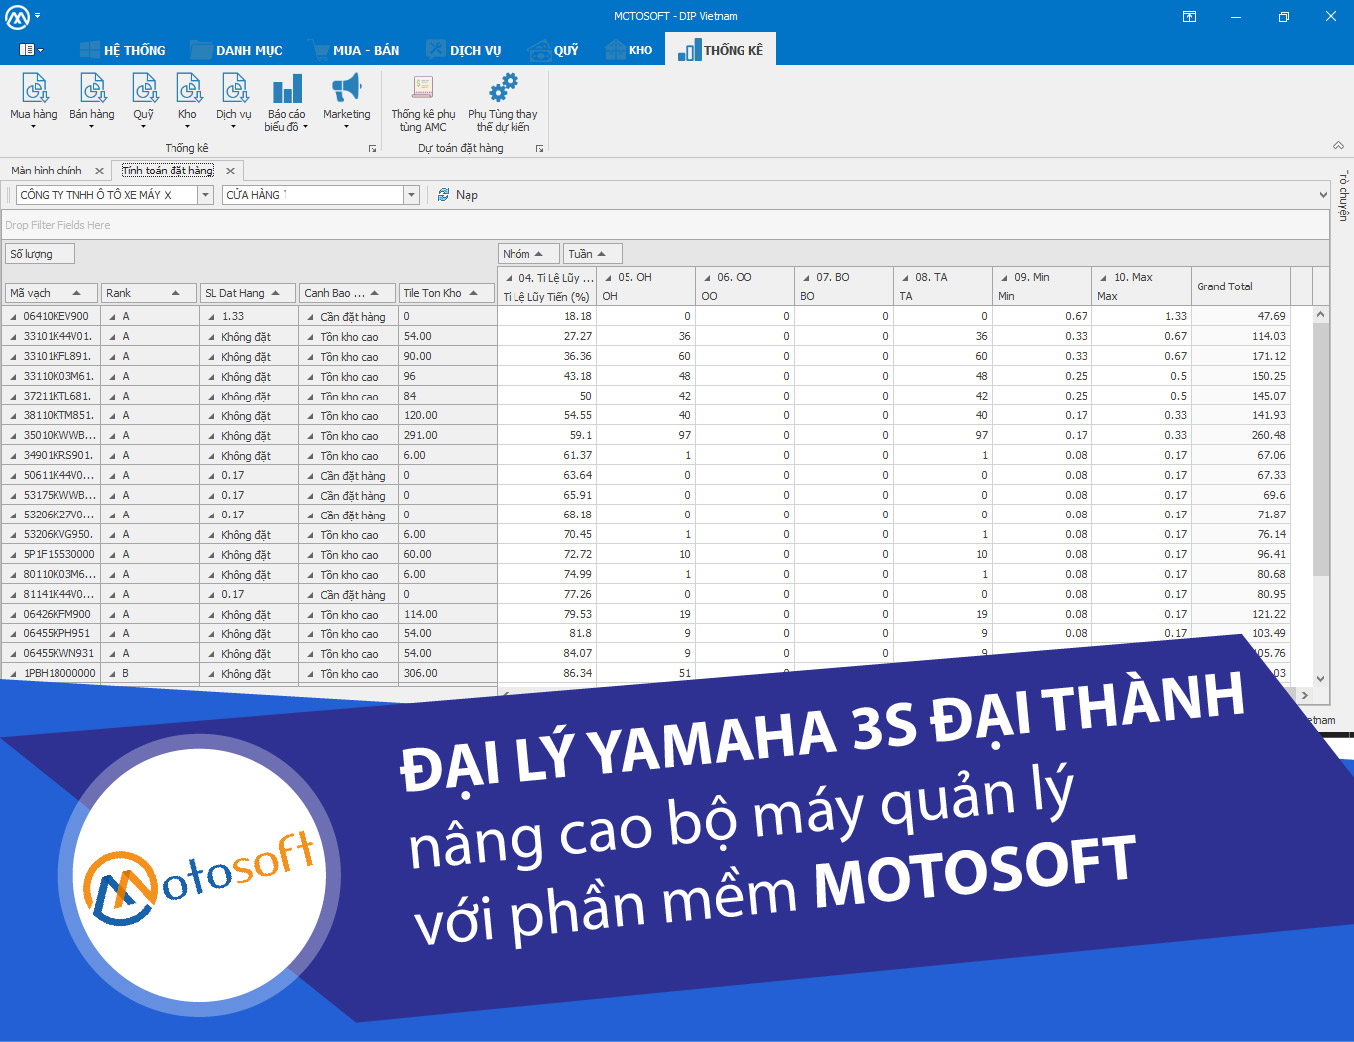 Đại Lý Yamaha3s Đại Thành nâng cao bộ máy quản lý chuỗi cửa hàng xe máy với phần mềm Motosoft